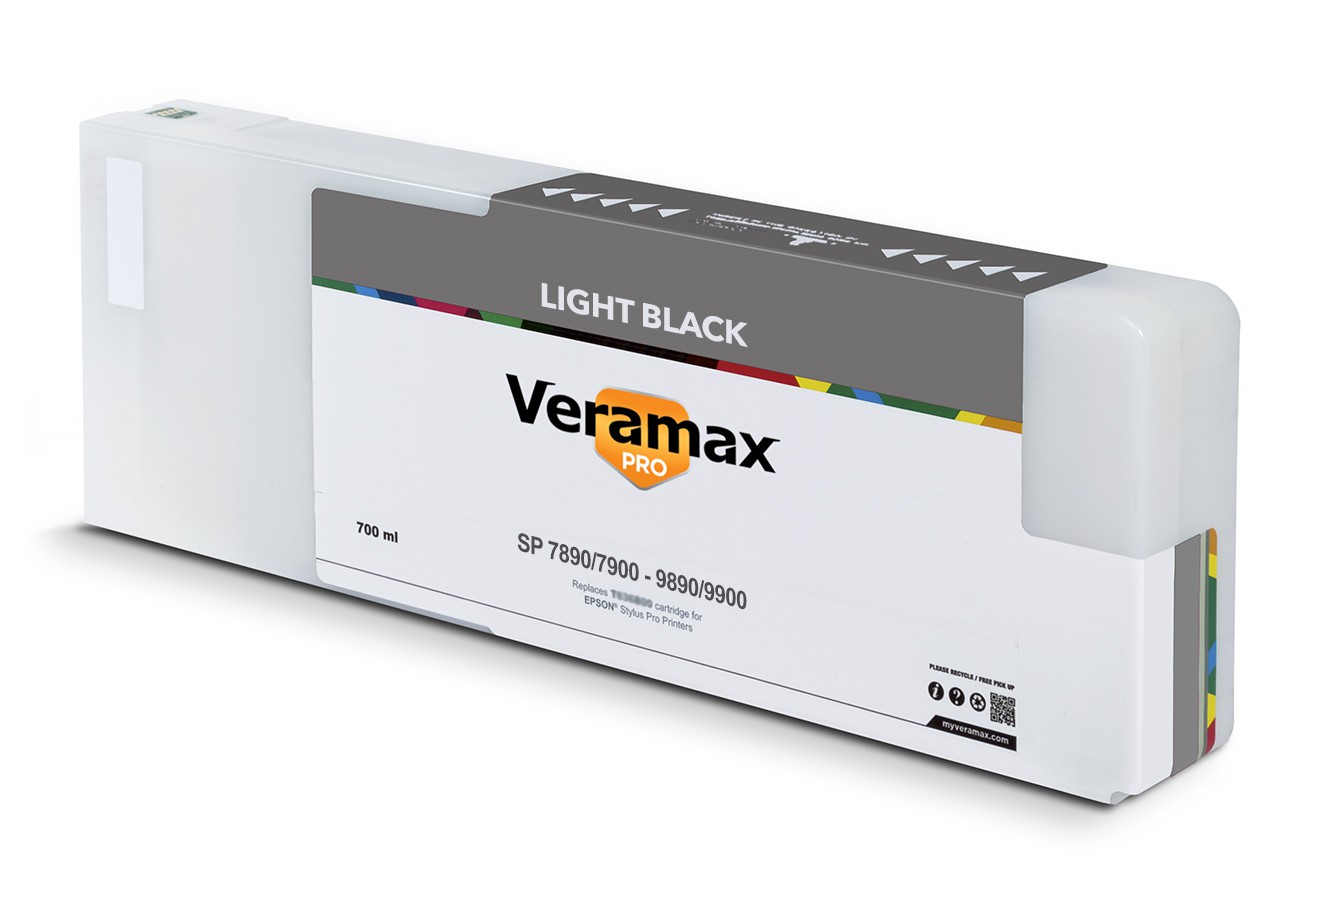 Veramax PRO SP 7890/9890 7900/9900 700ml Light Black